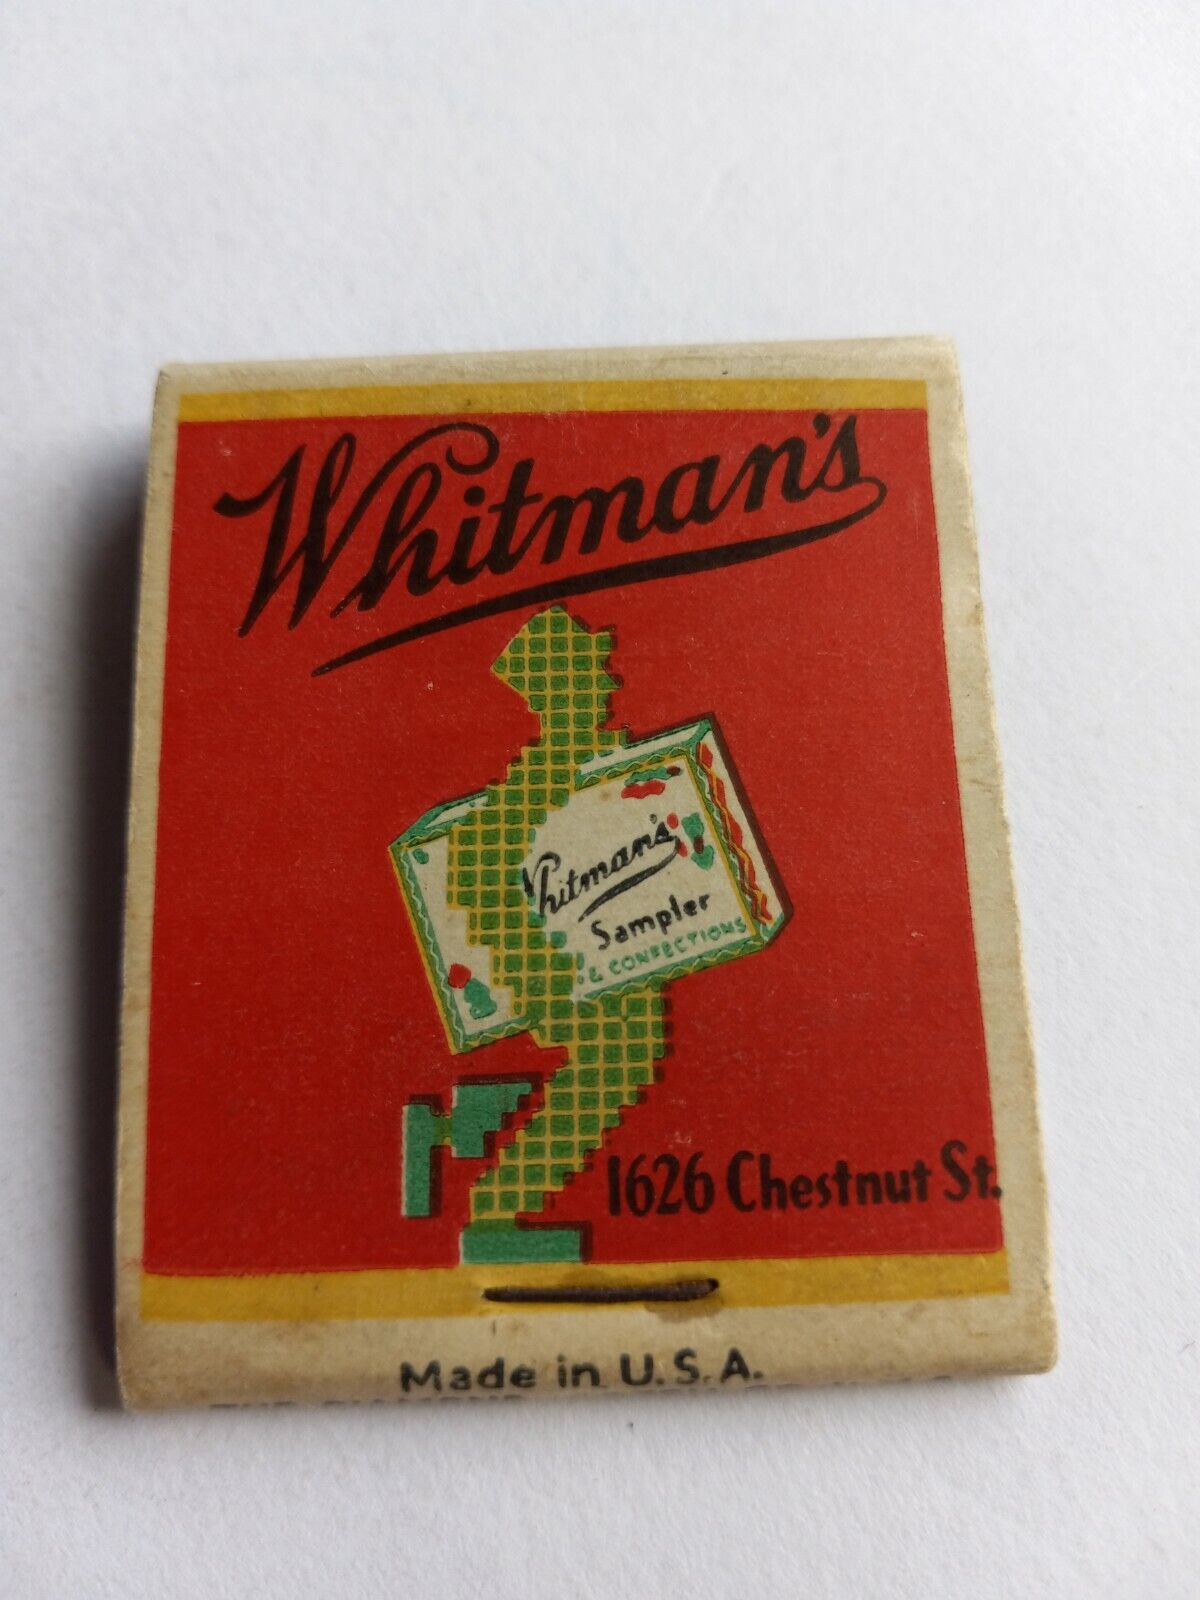 1626 Chestnut St Philadelphia Whitmans Luncheon  Men's Grille Matchbook